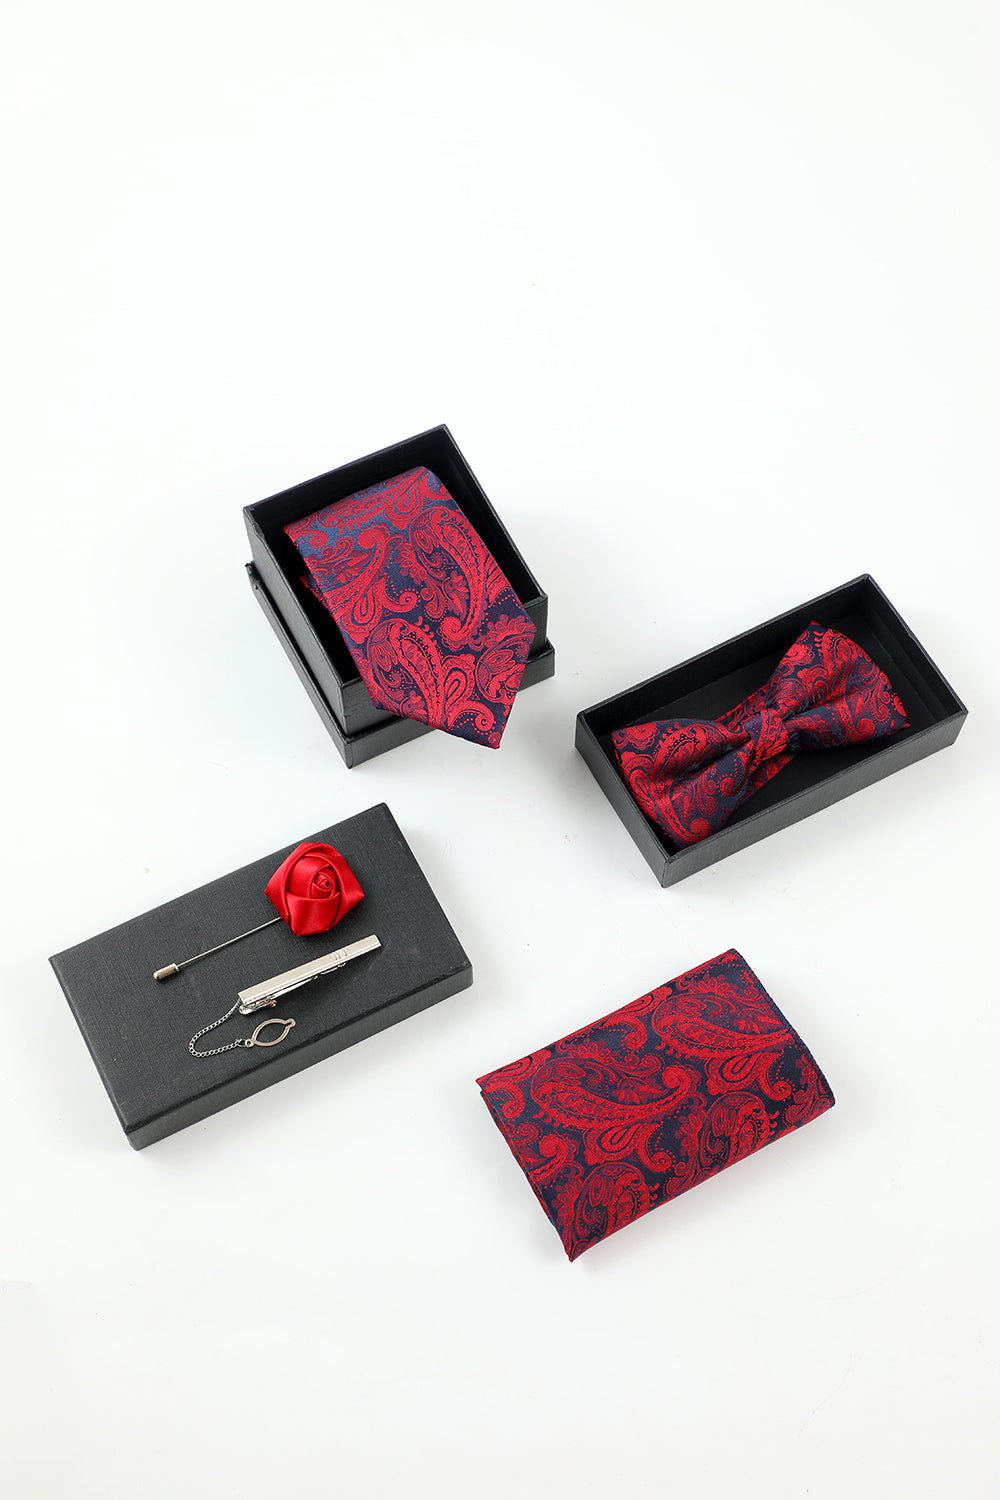 Bourgogne Jacquard Homme 5 pièces Accessoire Set Cravate et Nœud Papillon Poche Carré Fleur Revers Épingle Cravate Clip